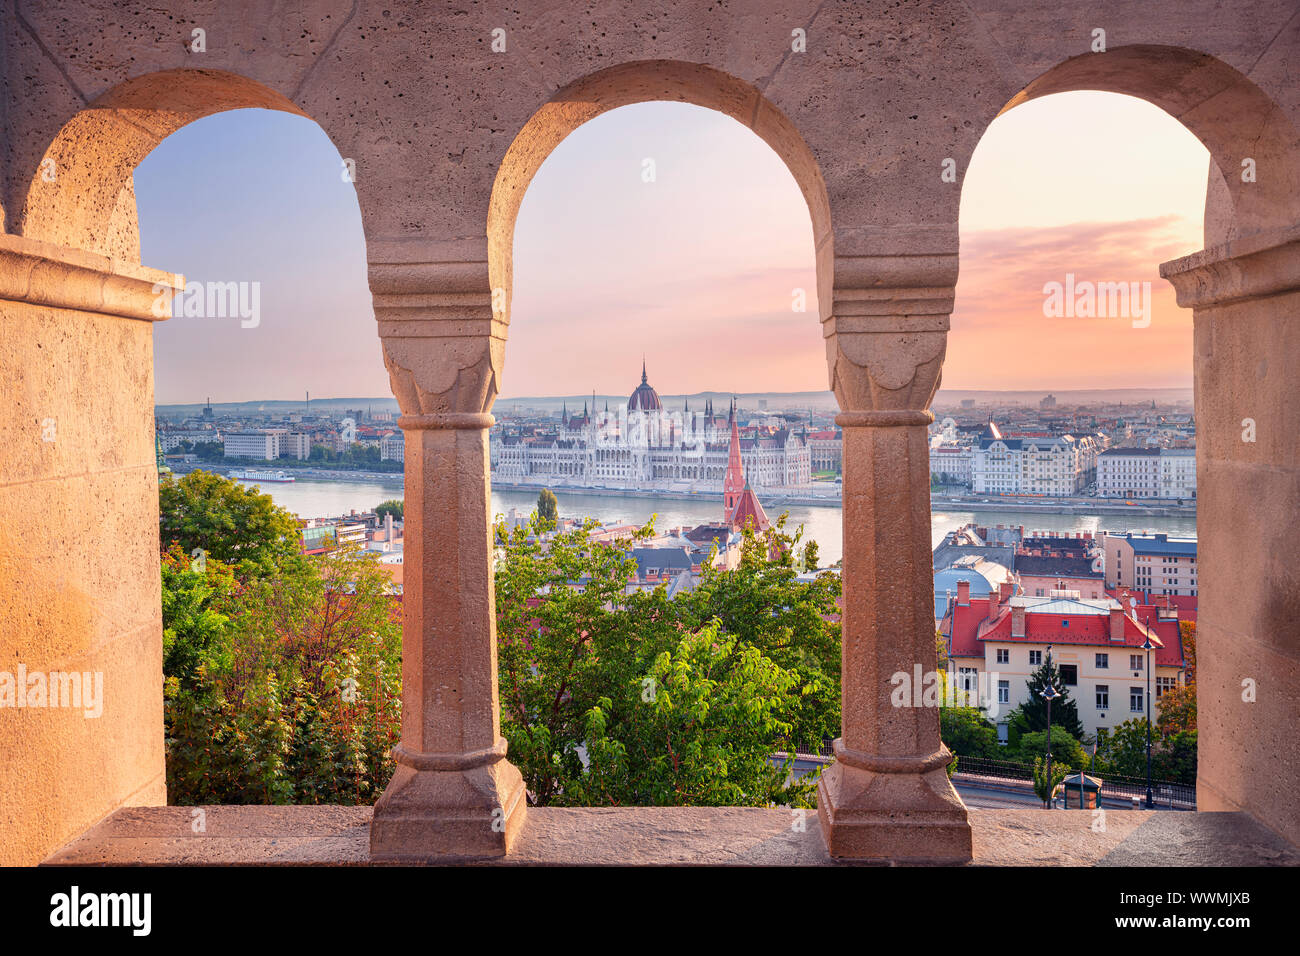 Budapest, Hungría. Imagen del paisaje urbano de Budapest con el edificio del parlamento durante el verano al amanecer. Foto de stock